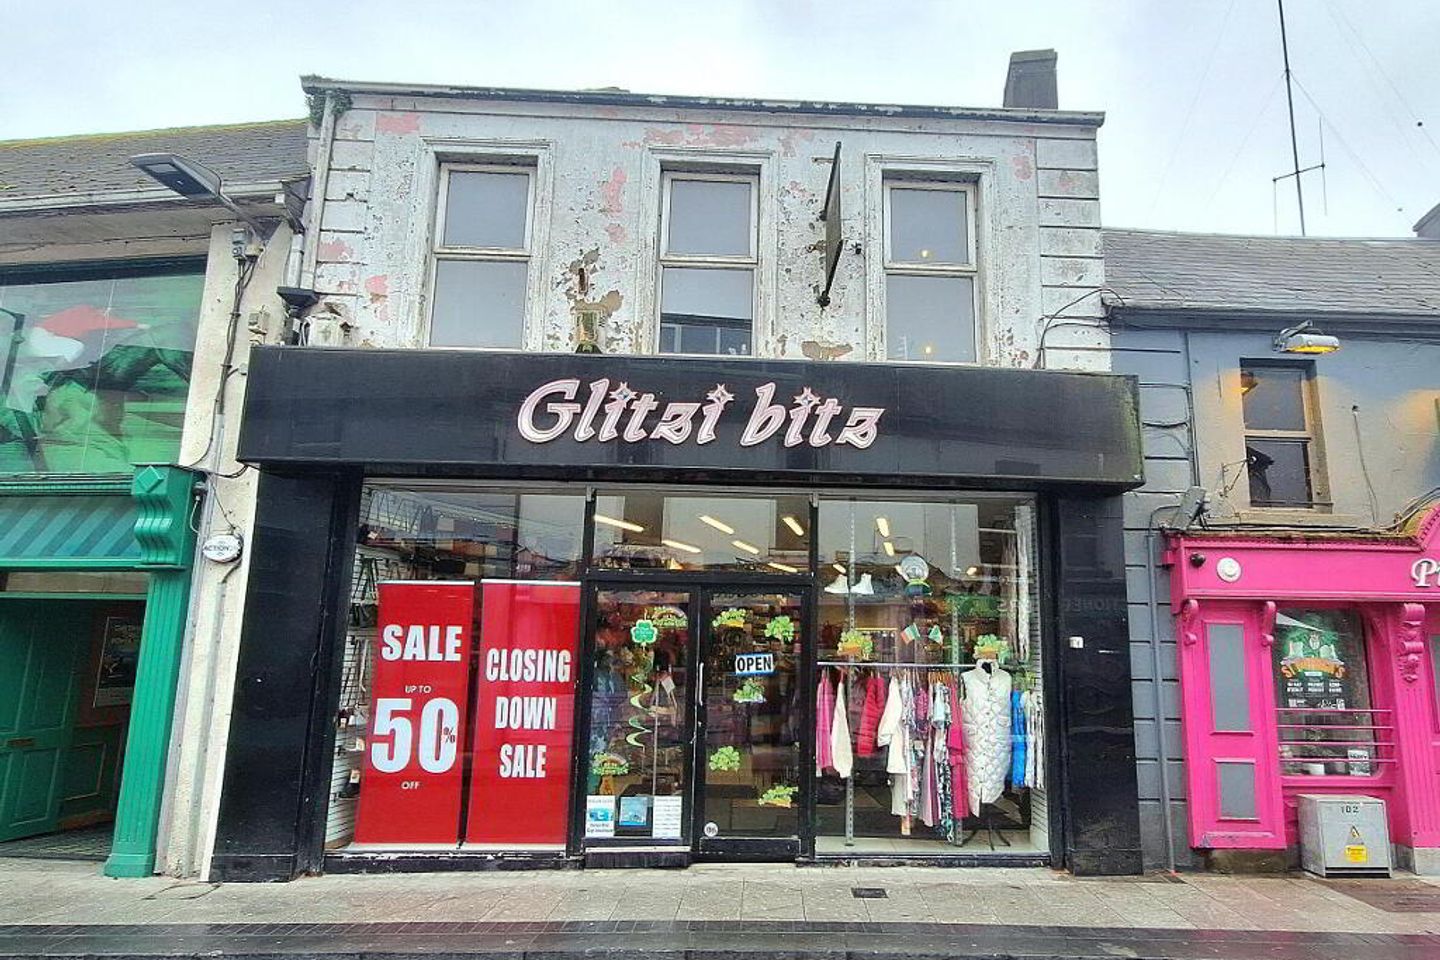 Glitzi Bitz,11 Dublin Gate Street, Athlone, Co. Westmeath, N37PY67